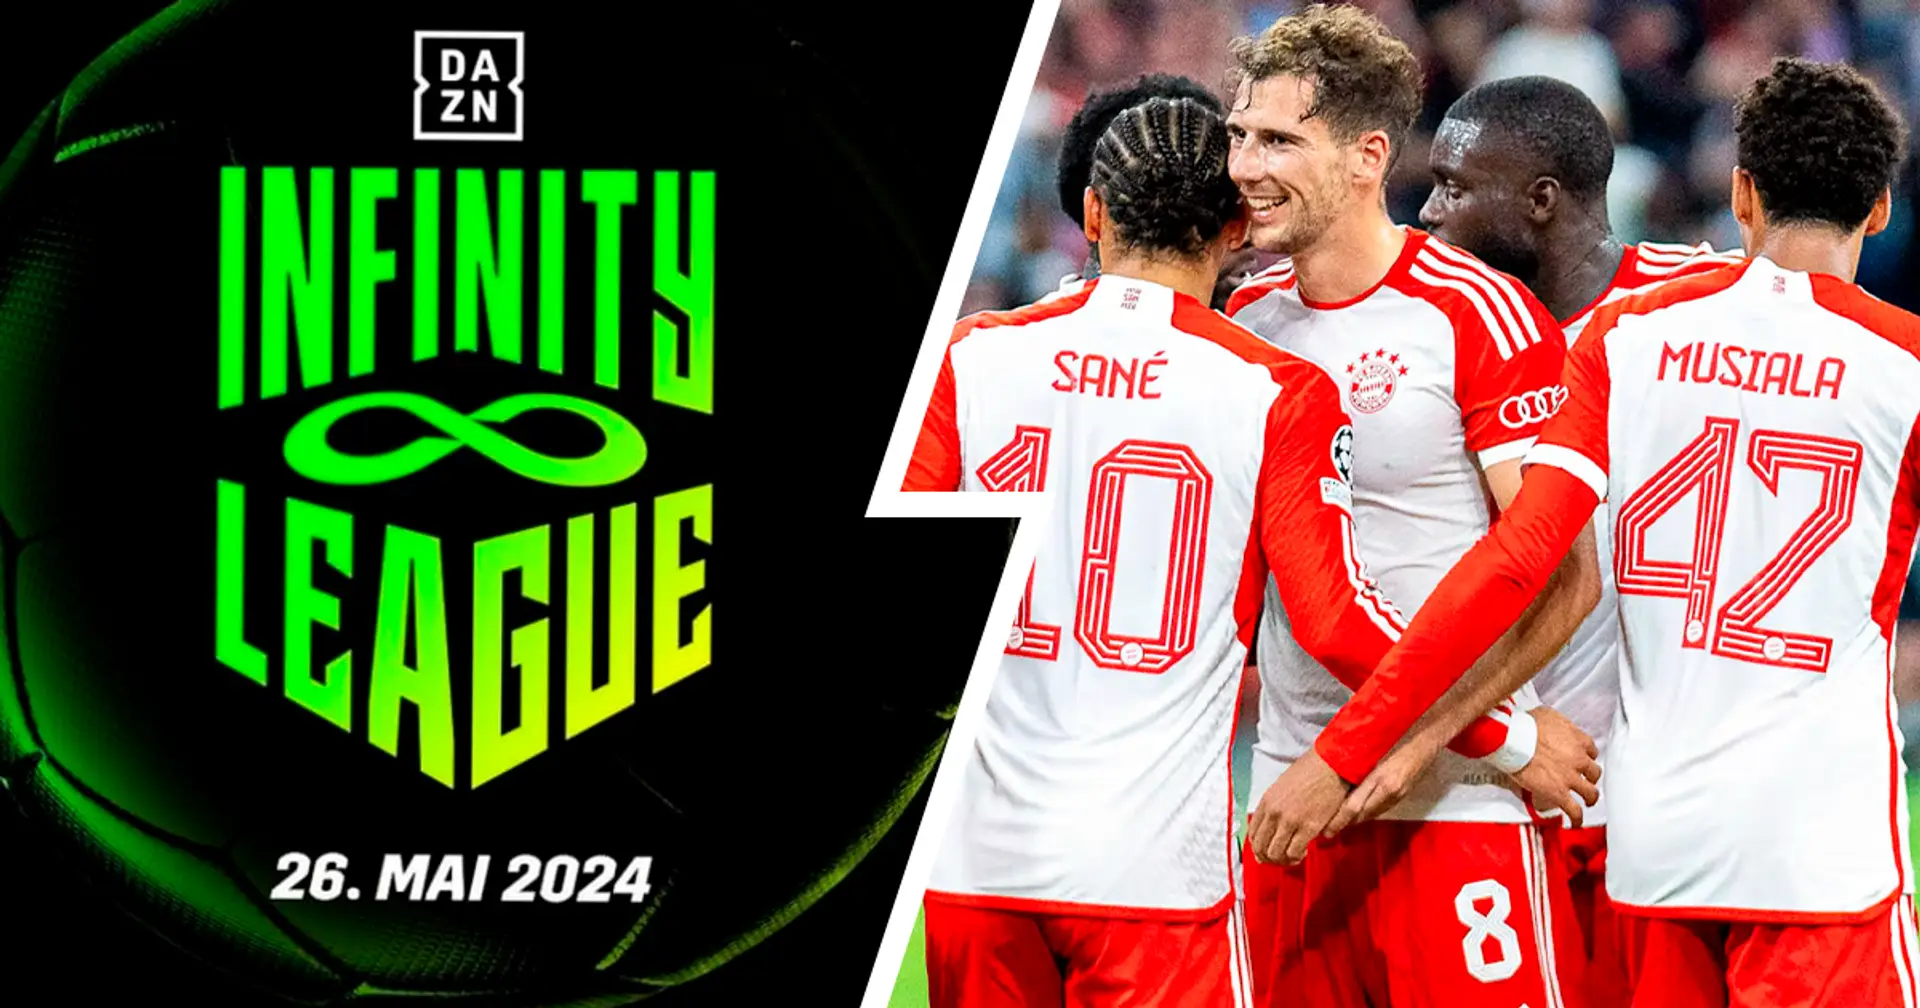 Bayern mit dabei: DAZN kündigt "Infinity League" an - Format des neuen Turniers erklärt